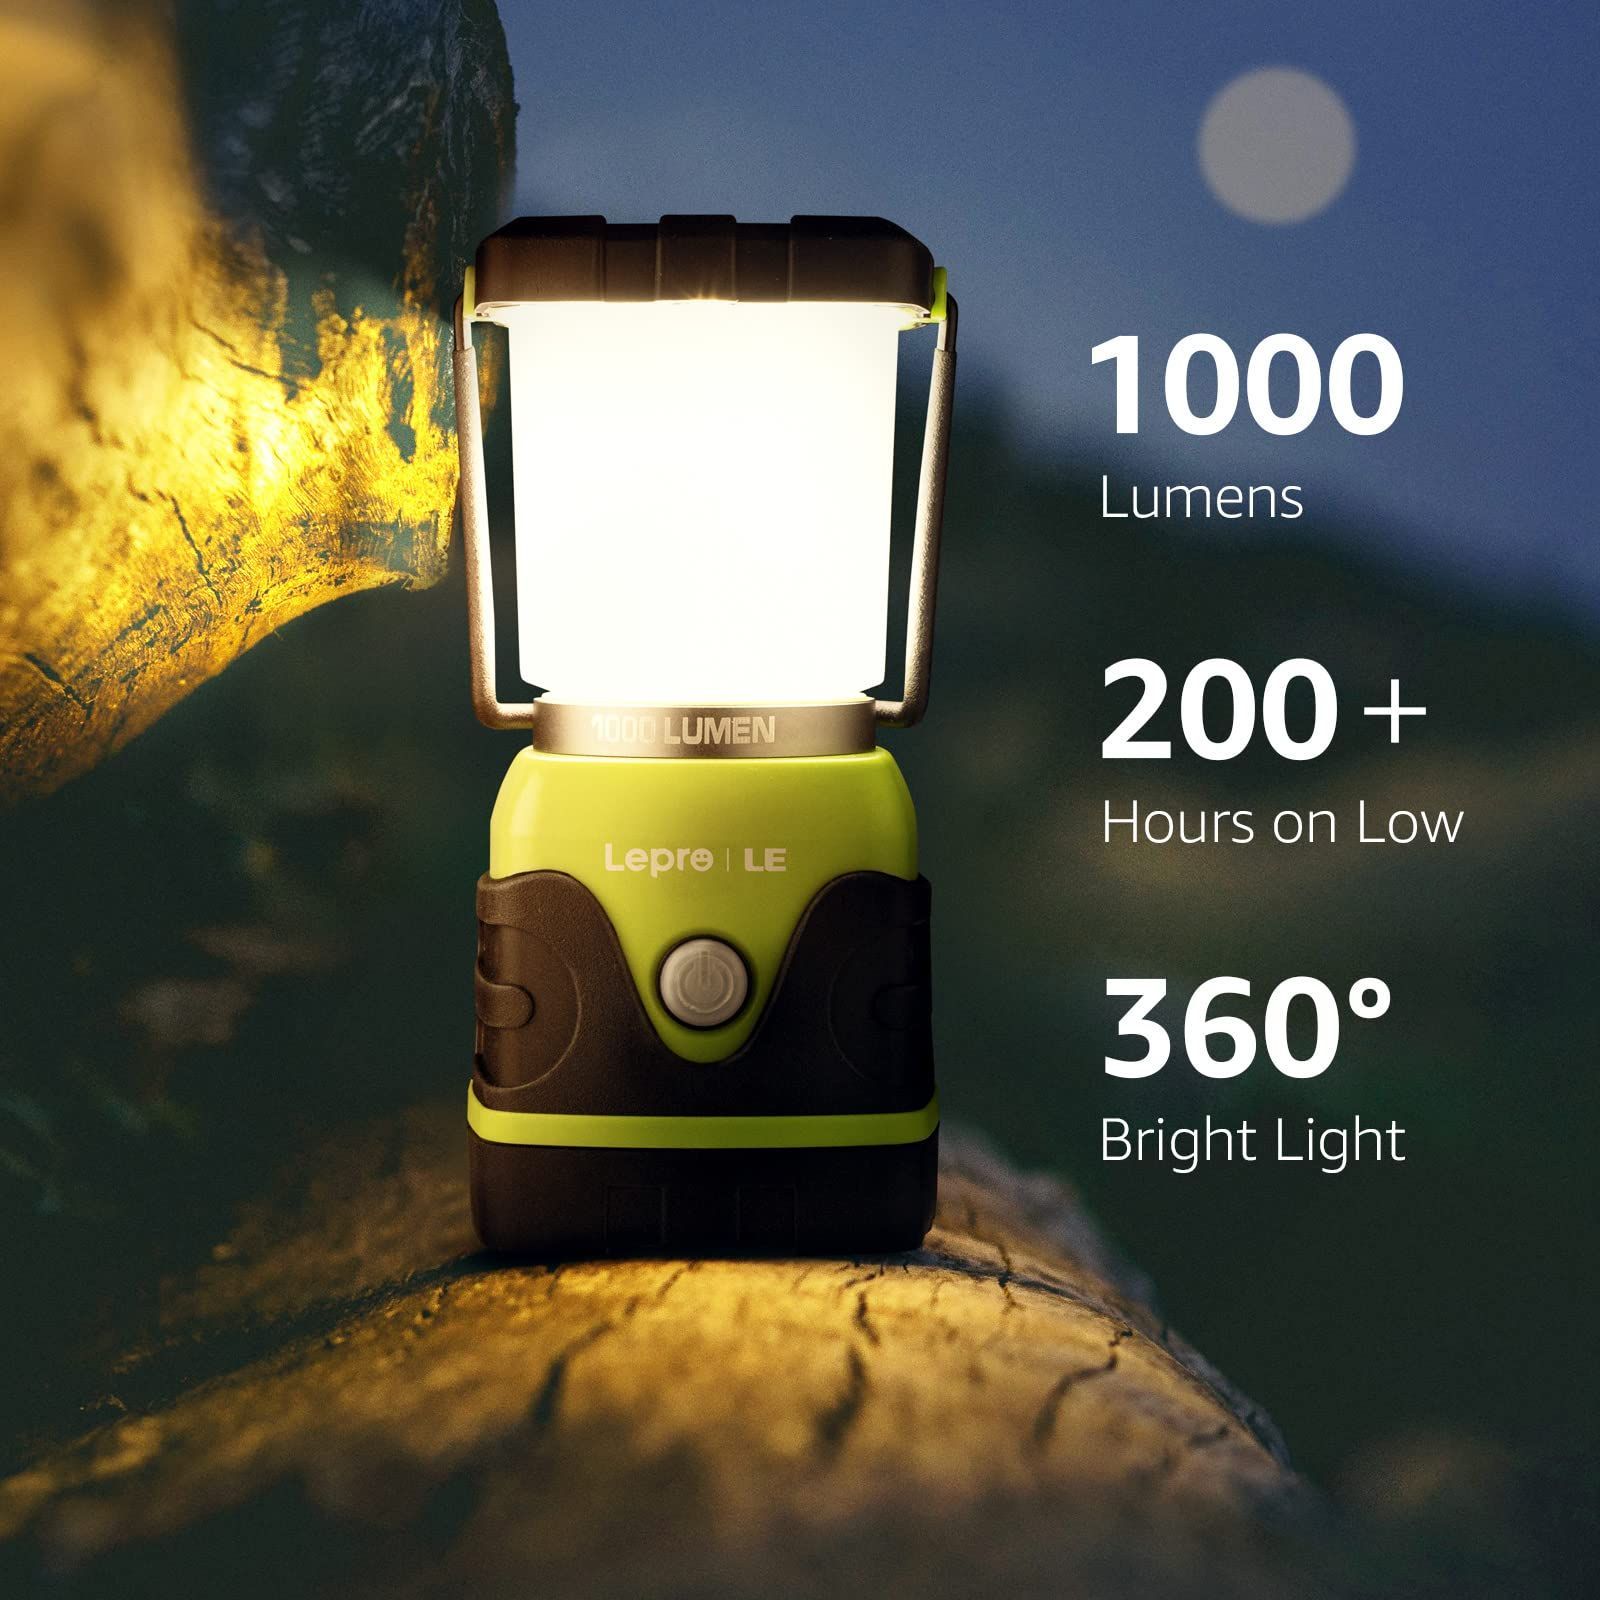 LED ランタン キャンプランタン 超高輝度 1000ルーメン実用点灯12-24